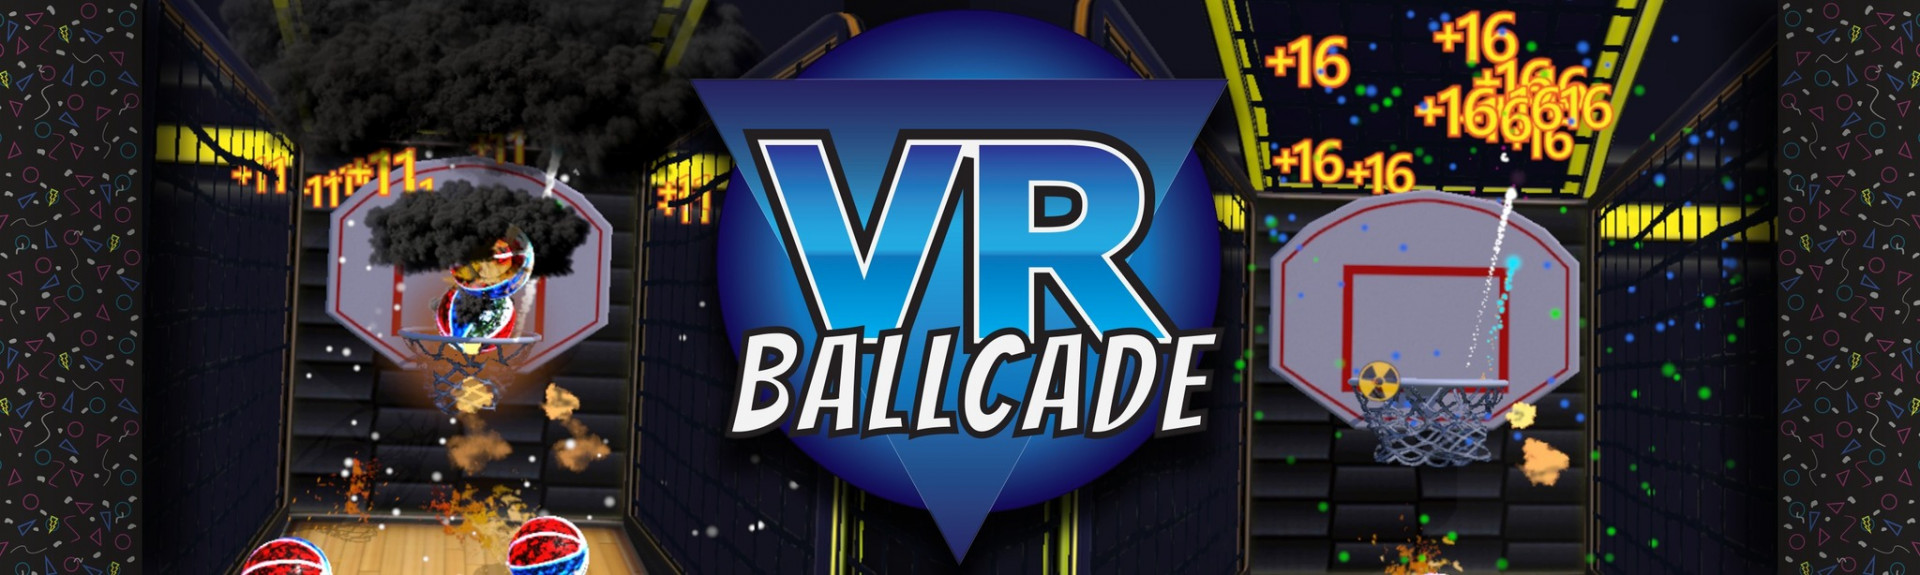 VR Ballcade